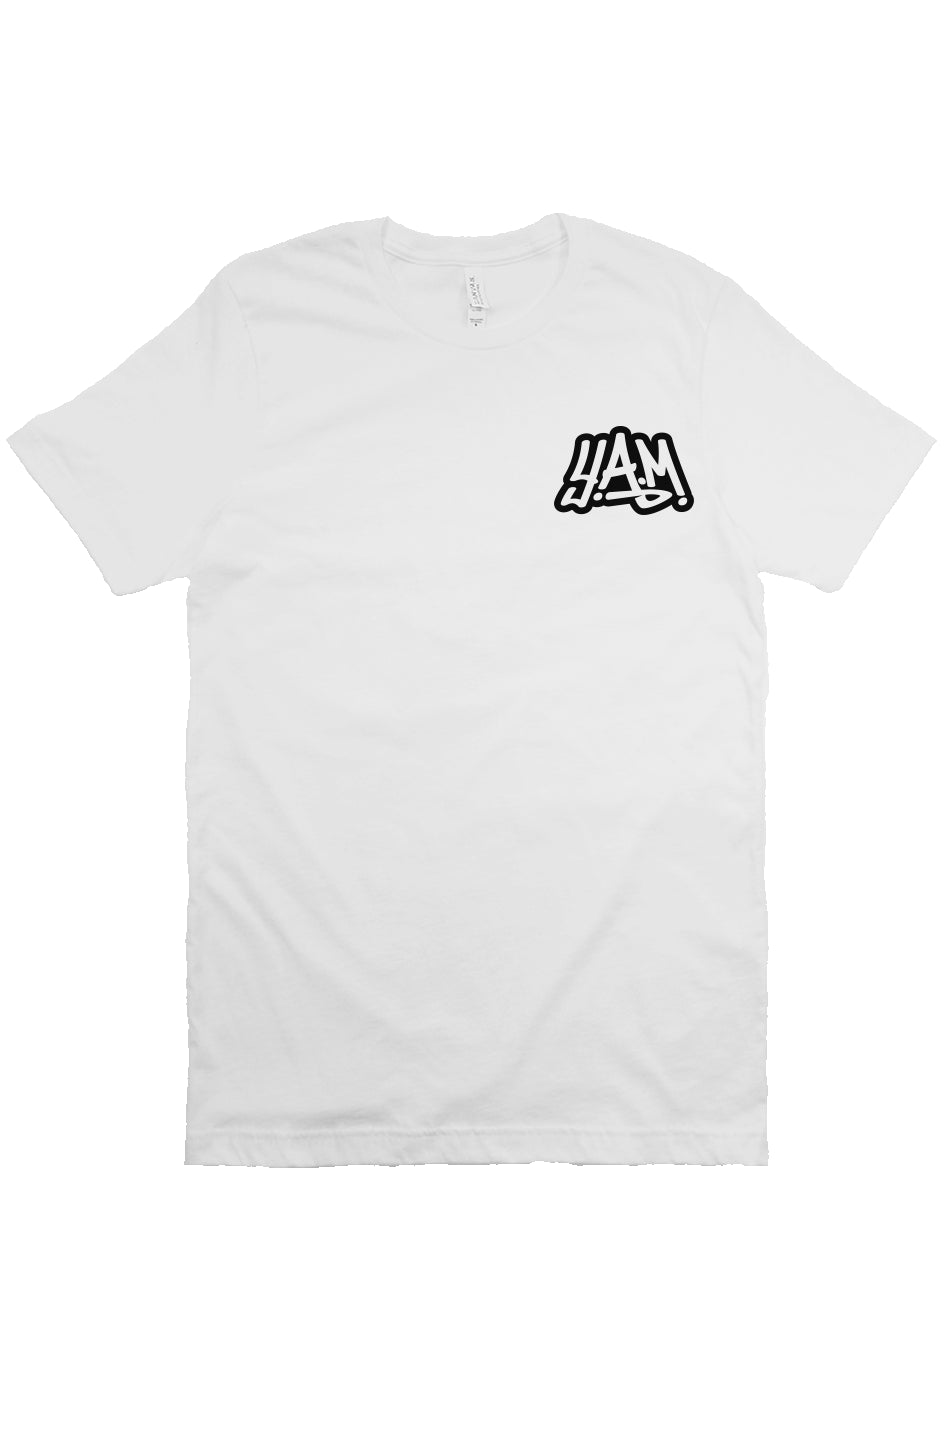 Unisex White T-Shirt Back Design